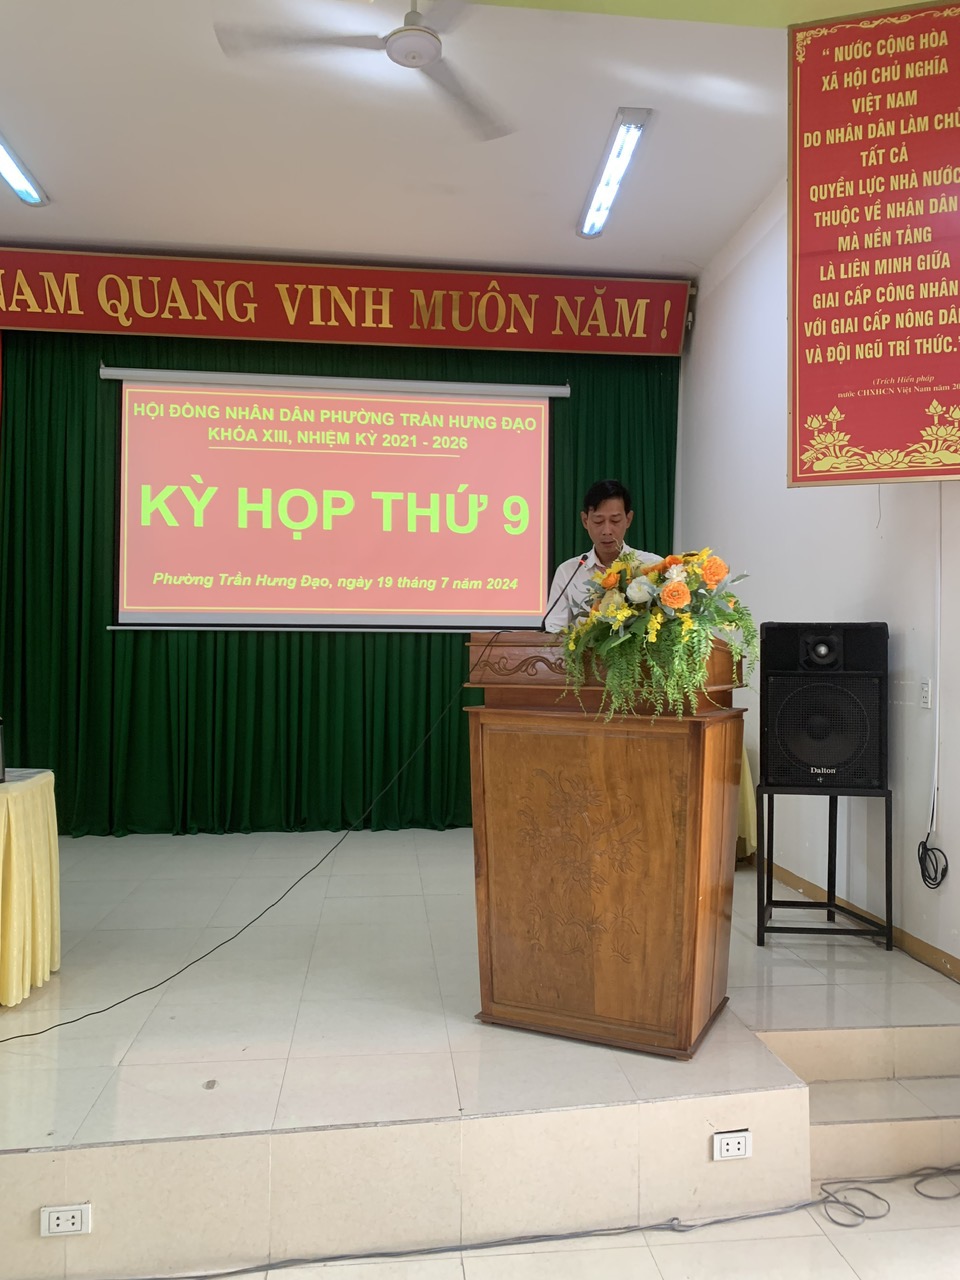 Đồng chí Võ Hồng Thanh, phó Chủ tịch UBND phường thông qua báo cáo